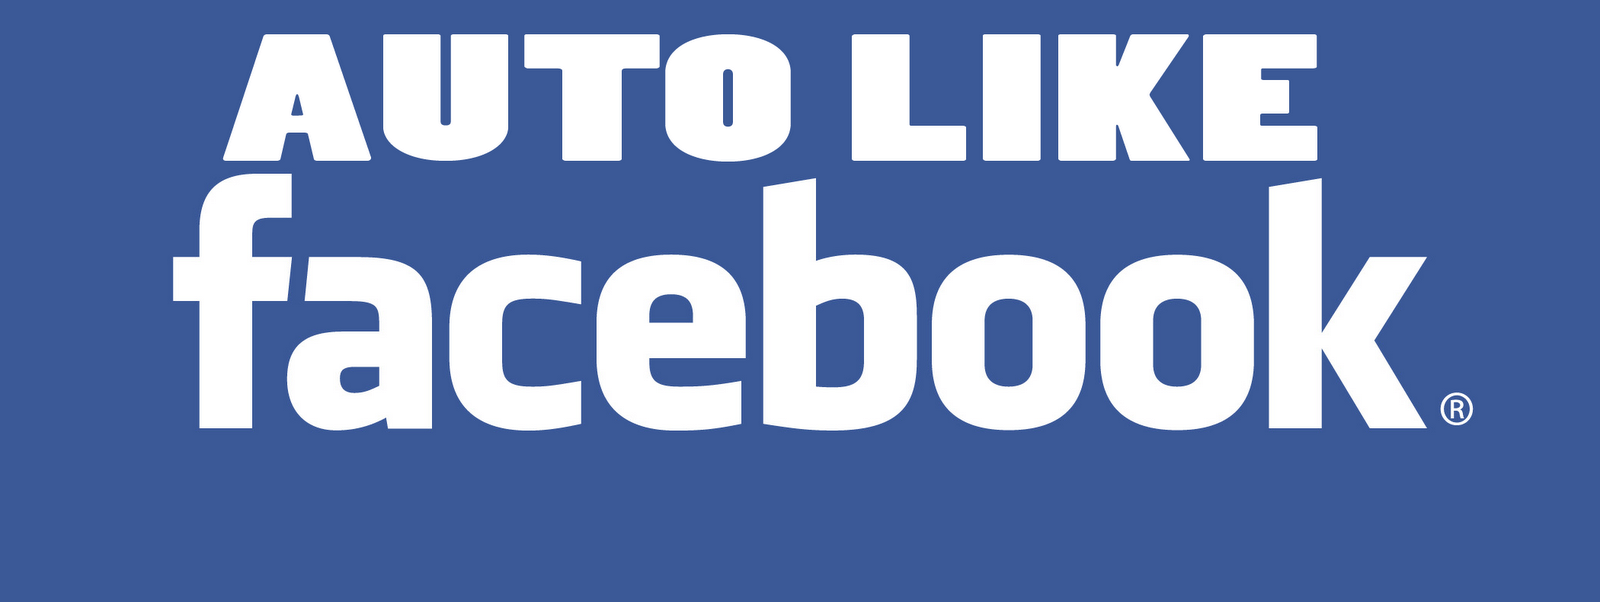 Autolike Facebook